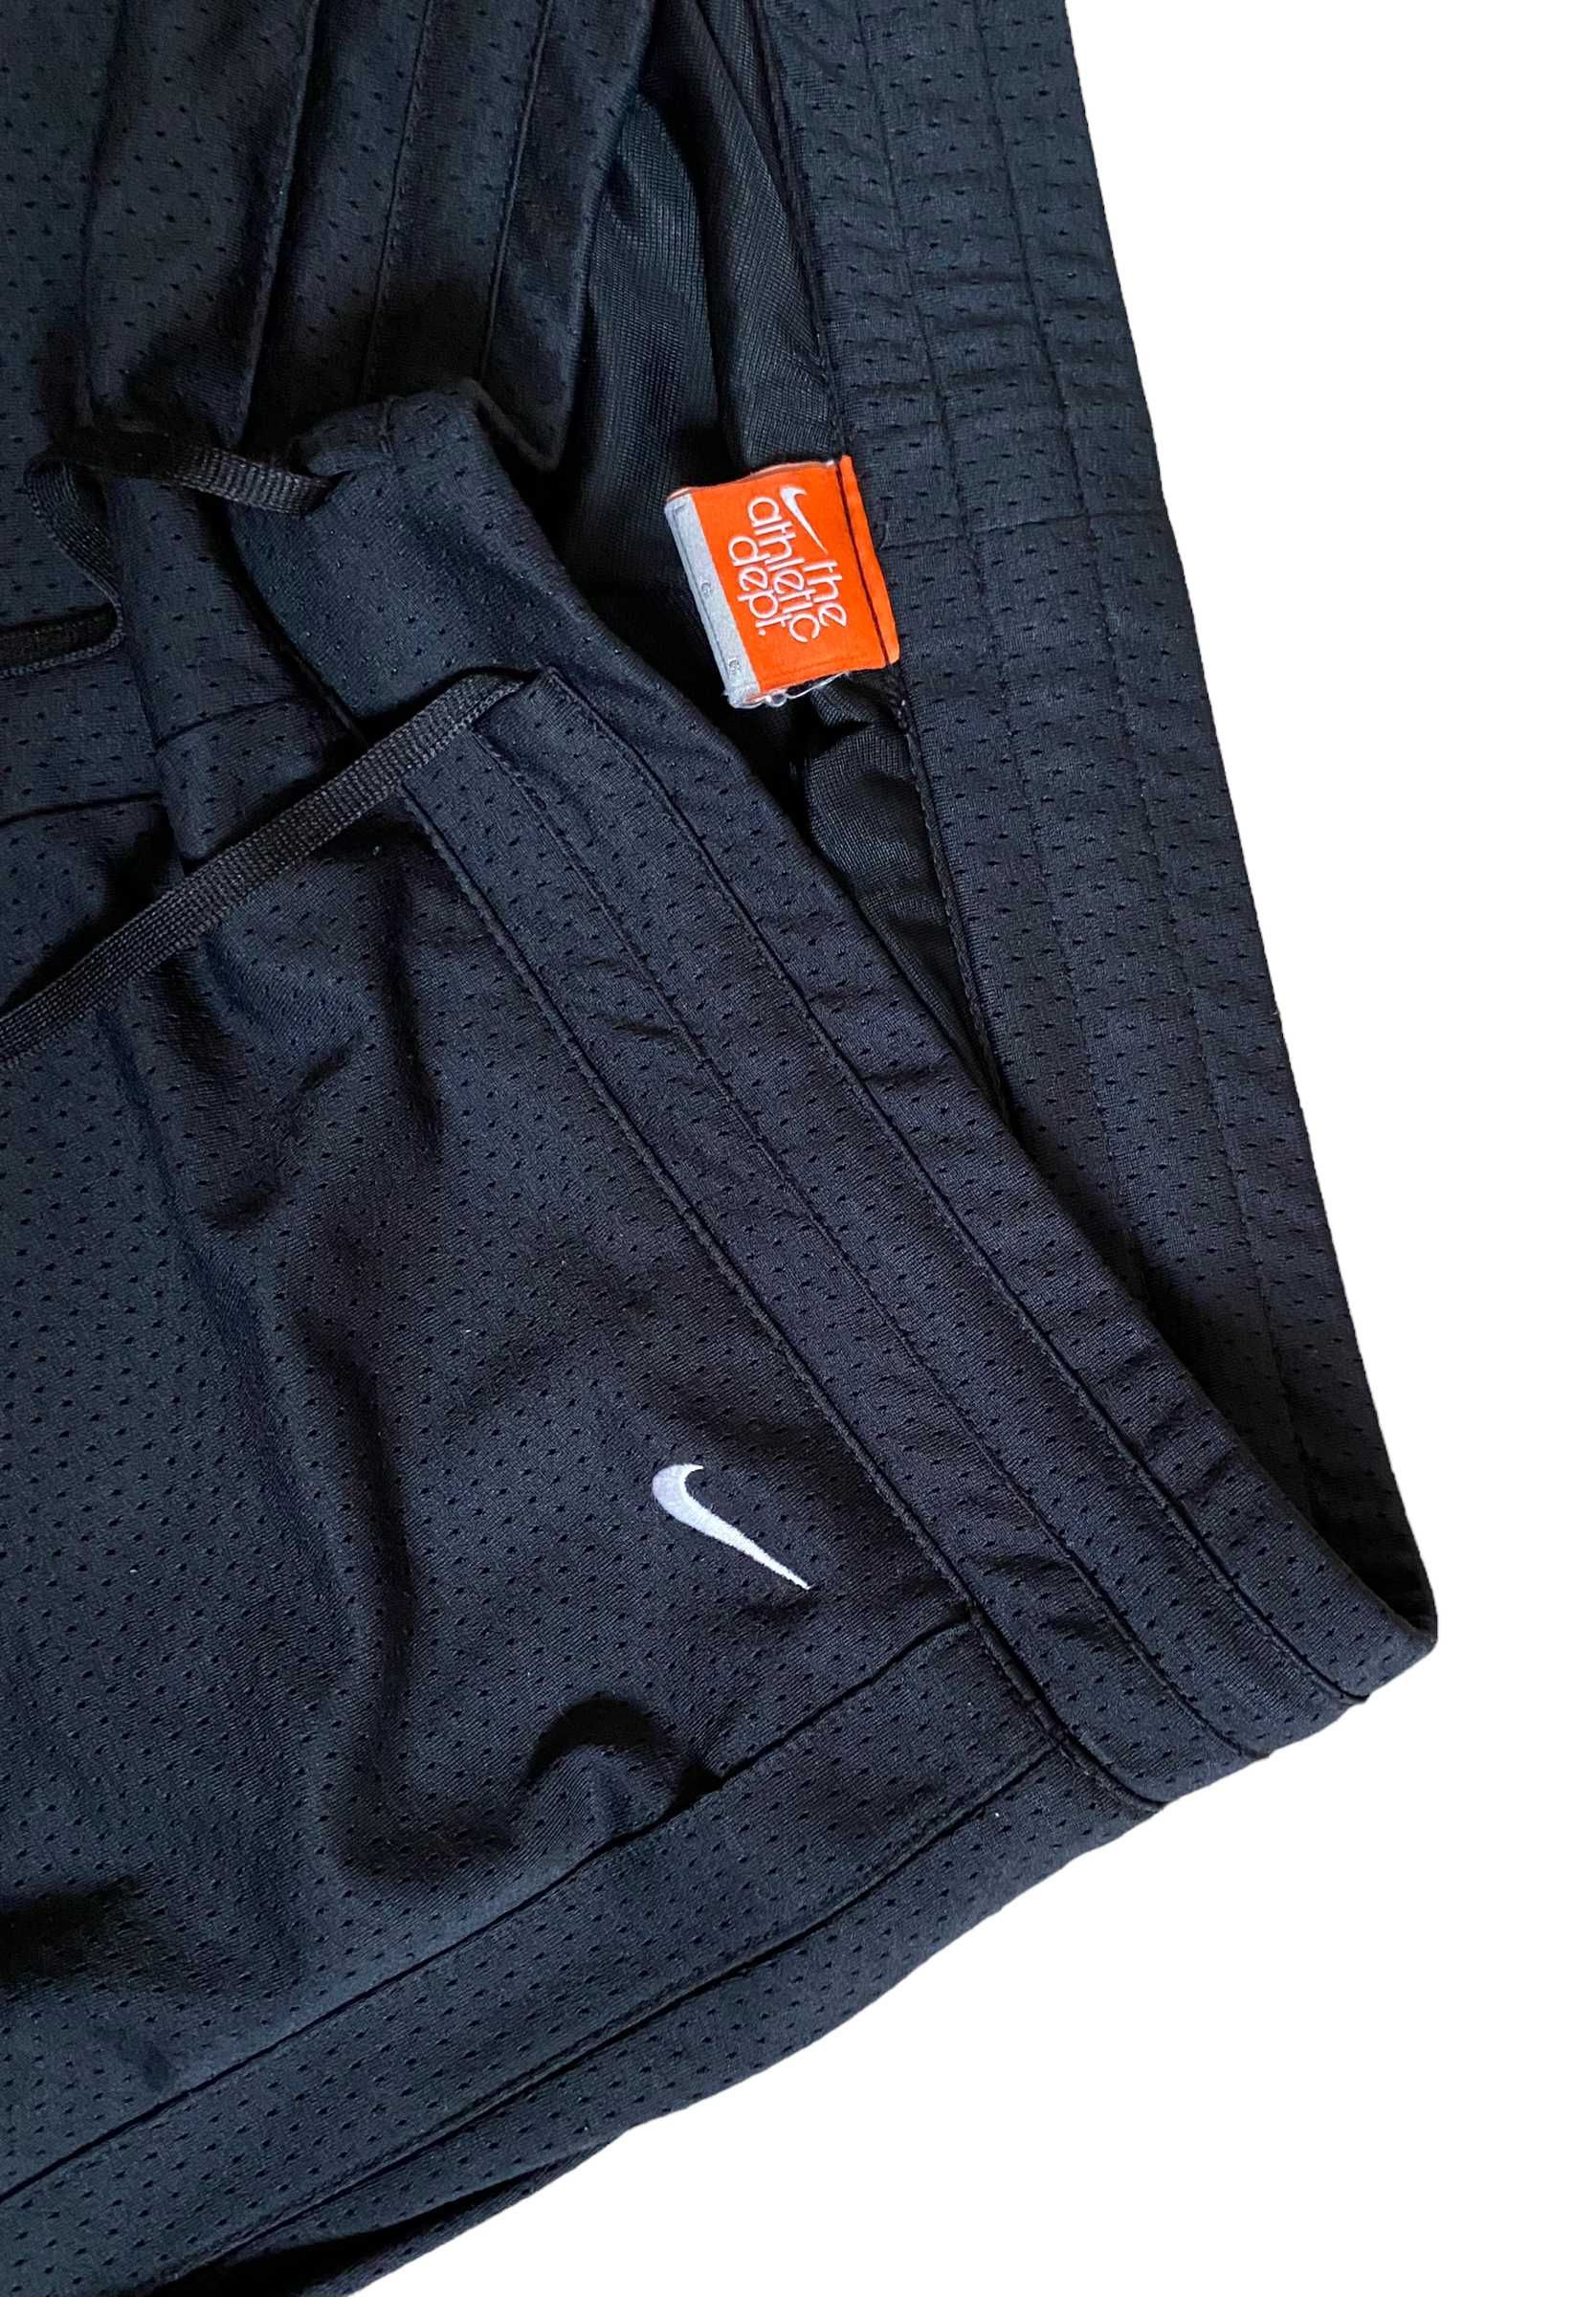 Nike vintage spodnie dresowe bootcut, rozmiar L, stan bardzo dobry